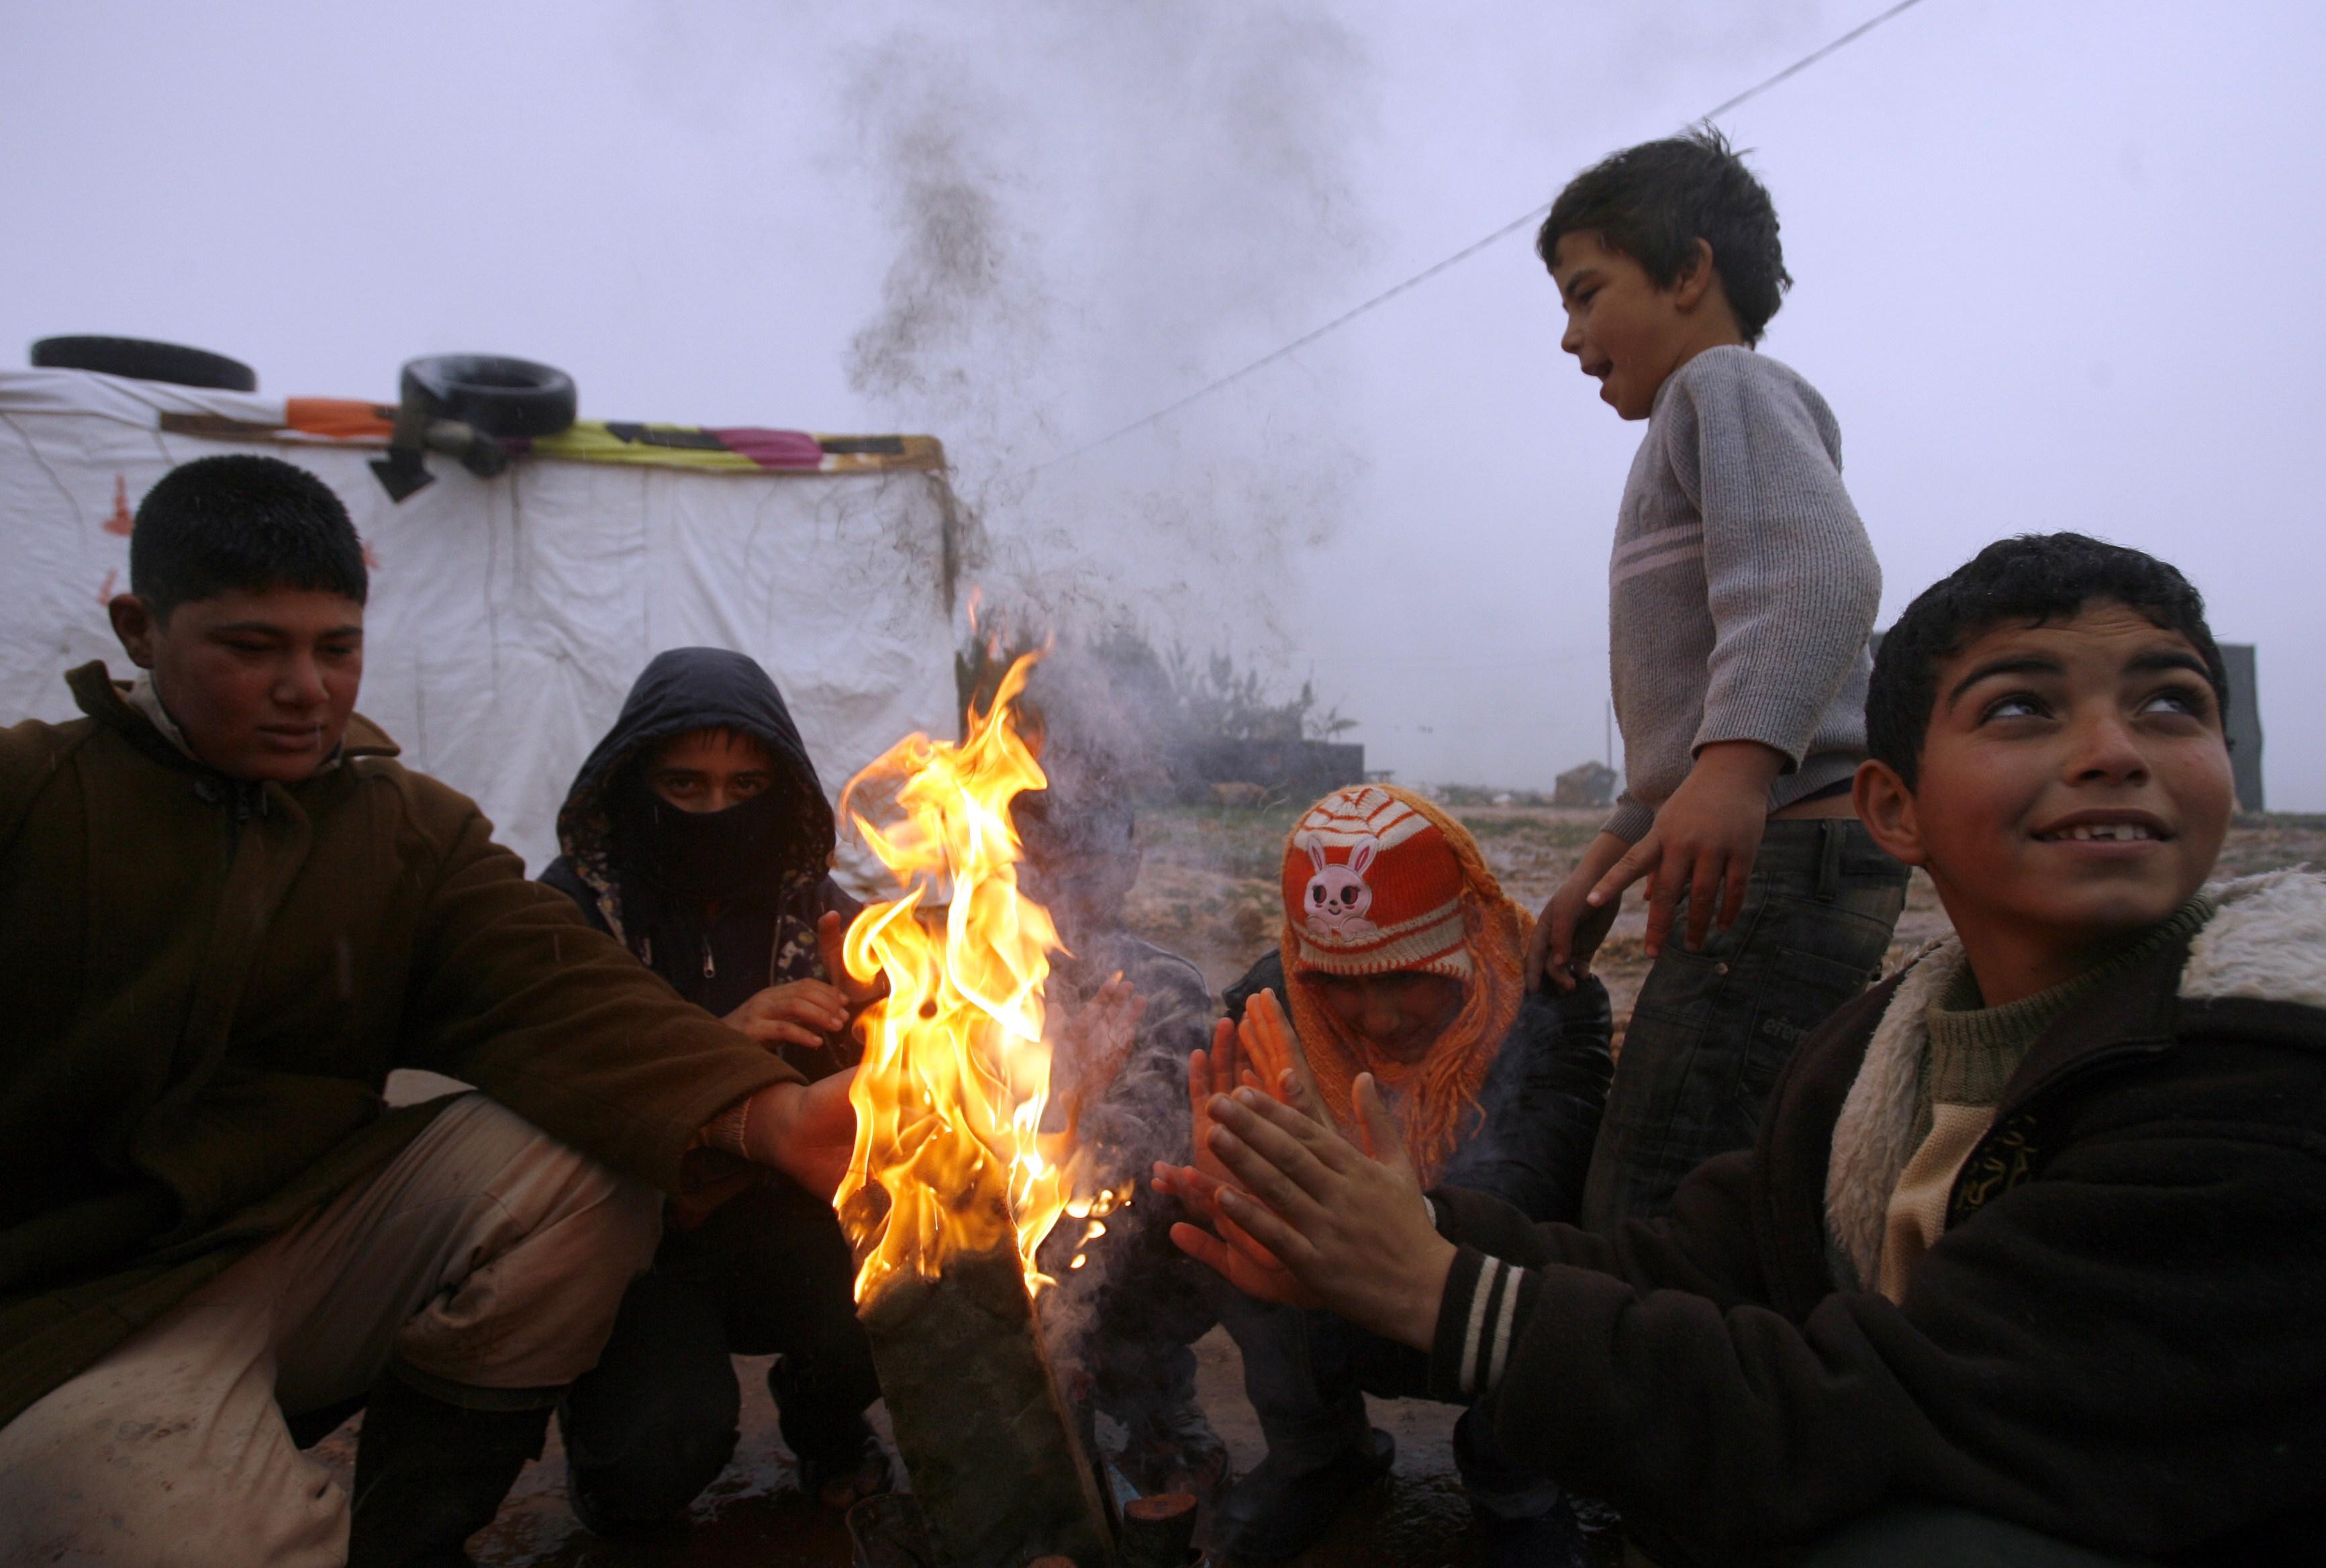 Hjälpbehovet ökar när vintern nalkas och situationen blir hårdare för de människor som flytt kriget i Syrien. (Foto: Mahmoud Zayyat/AFP/Getty Images